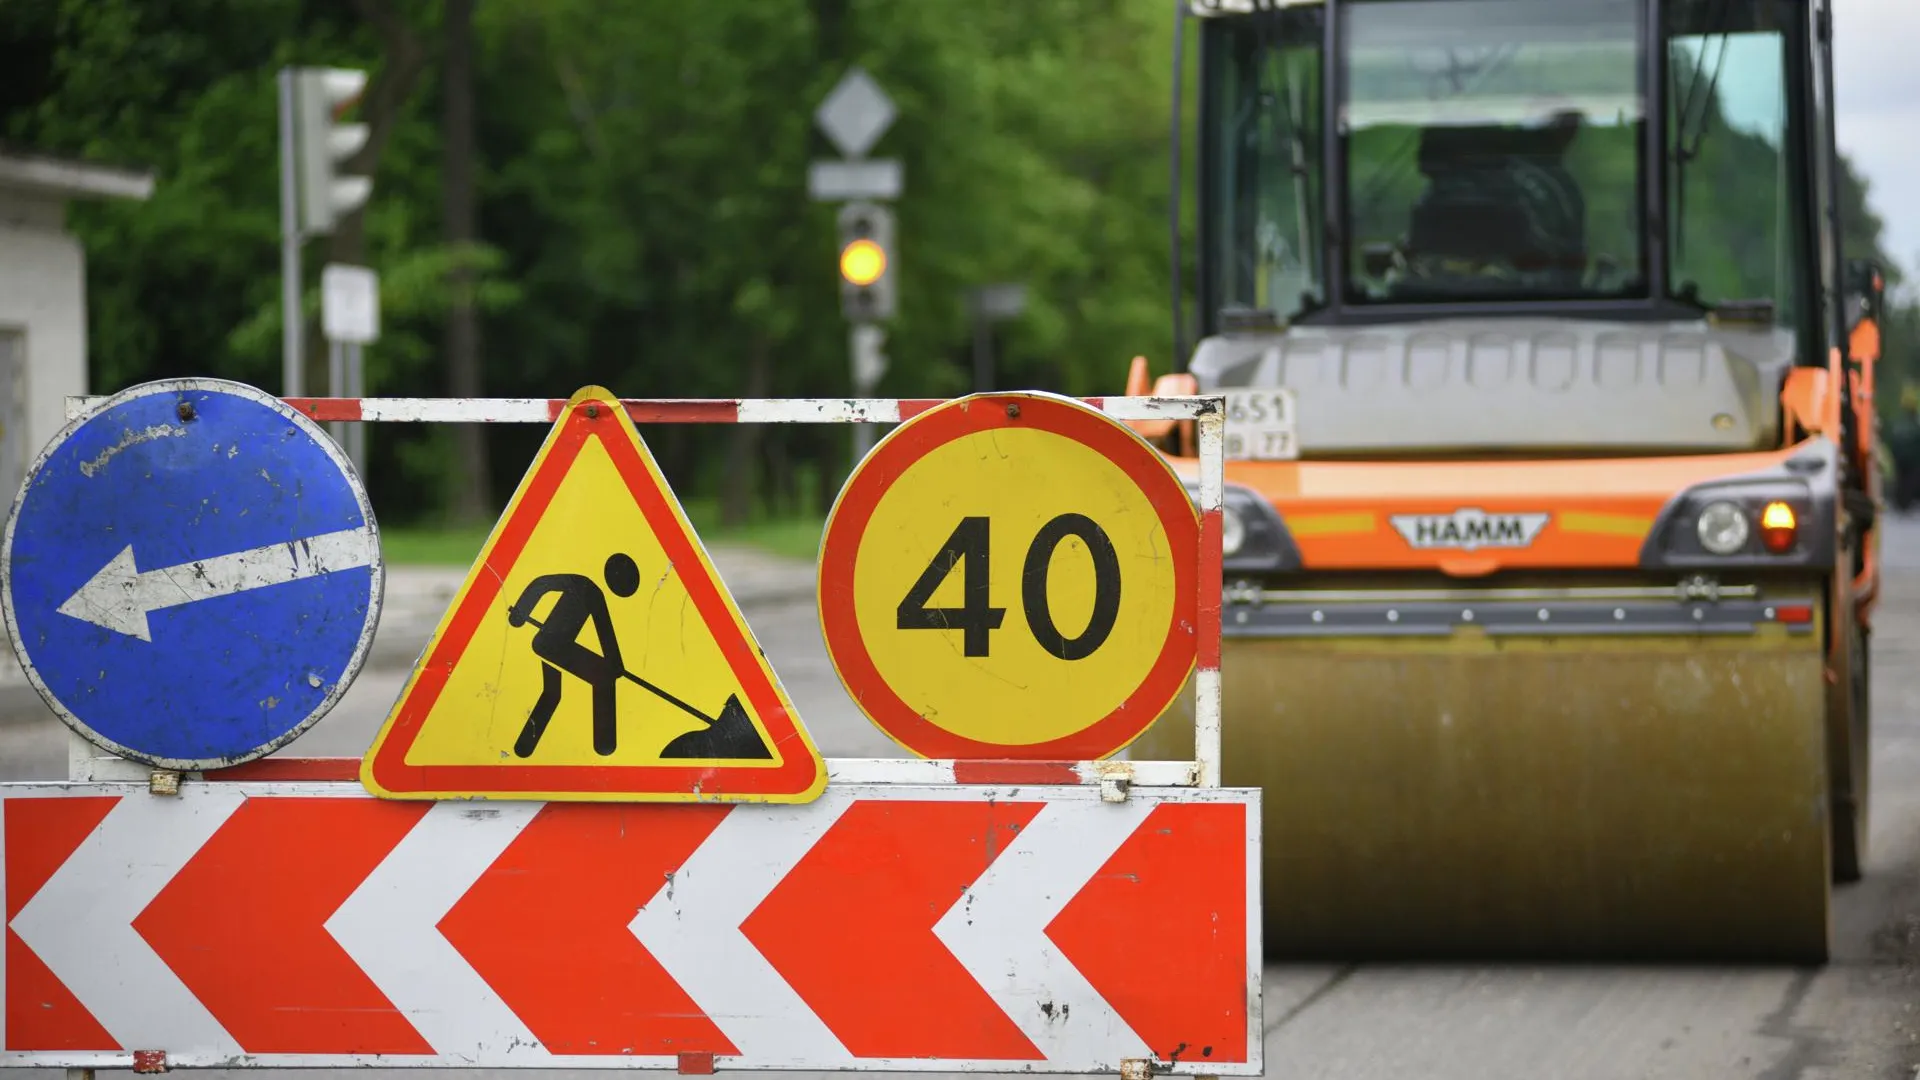 Более 40 км дорог в Коломенском районе отремонтируют в 2016 году